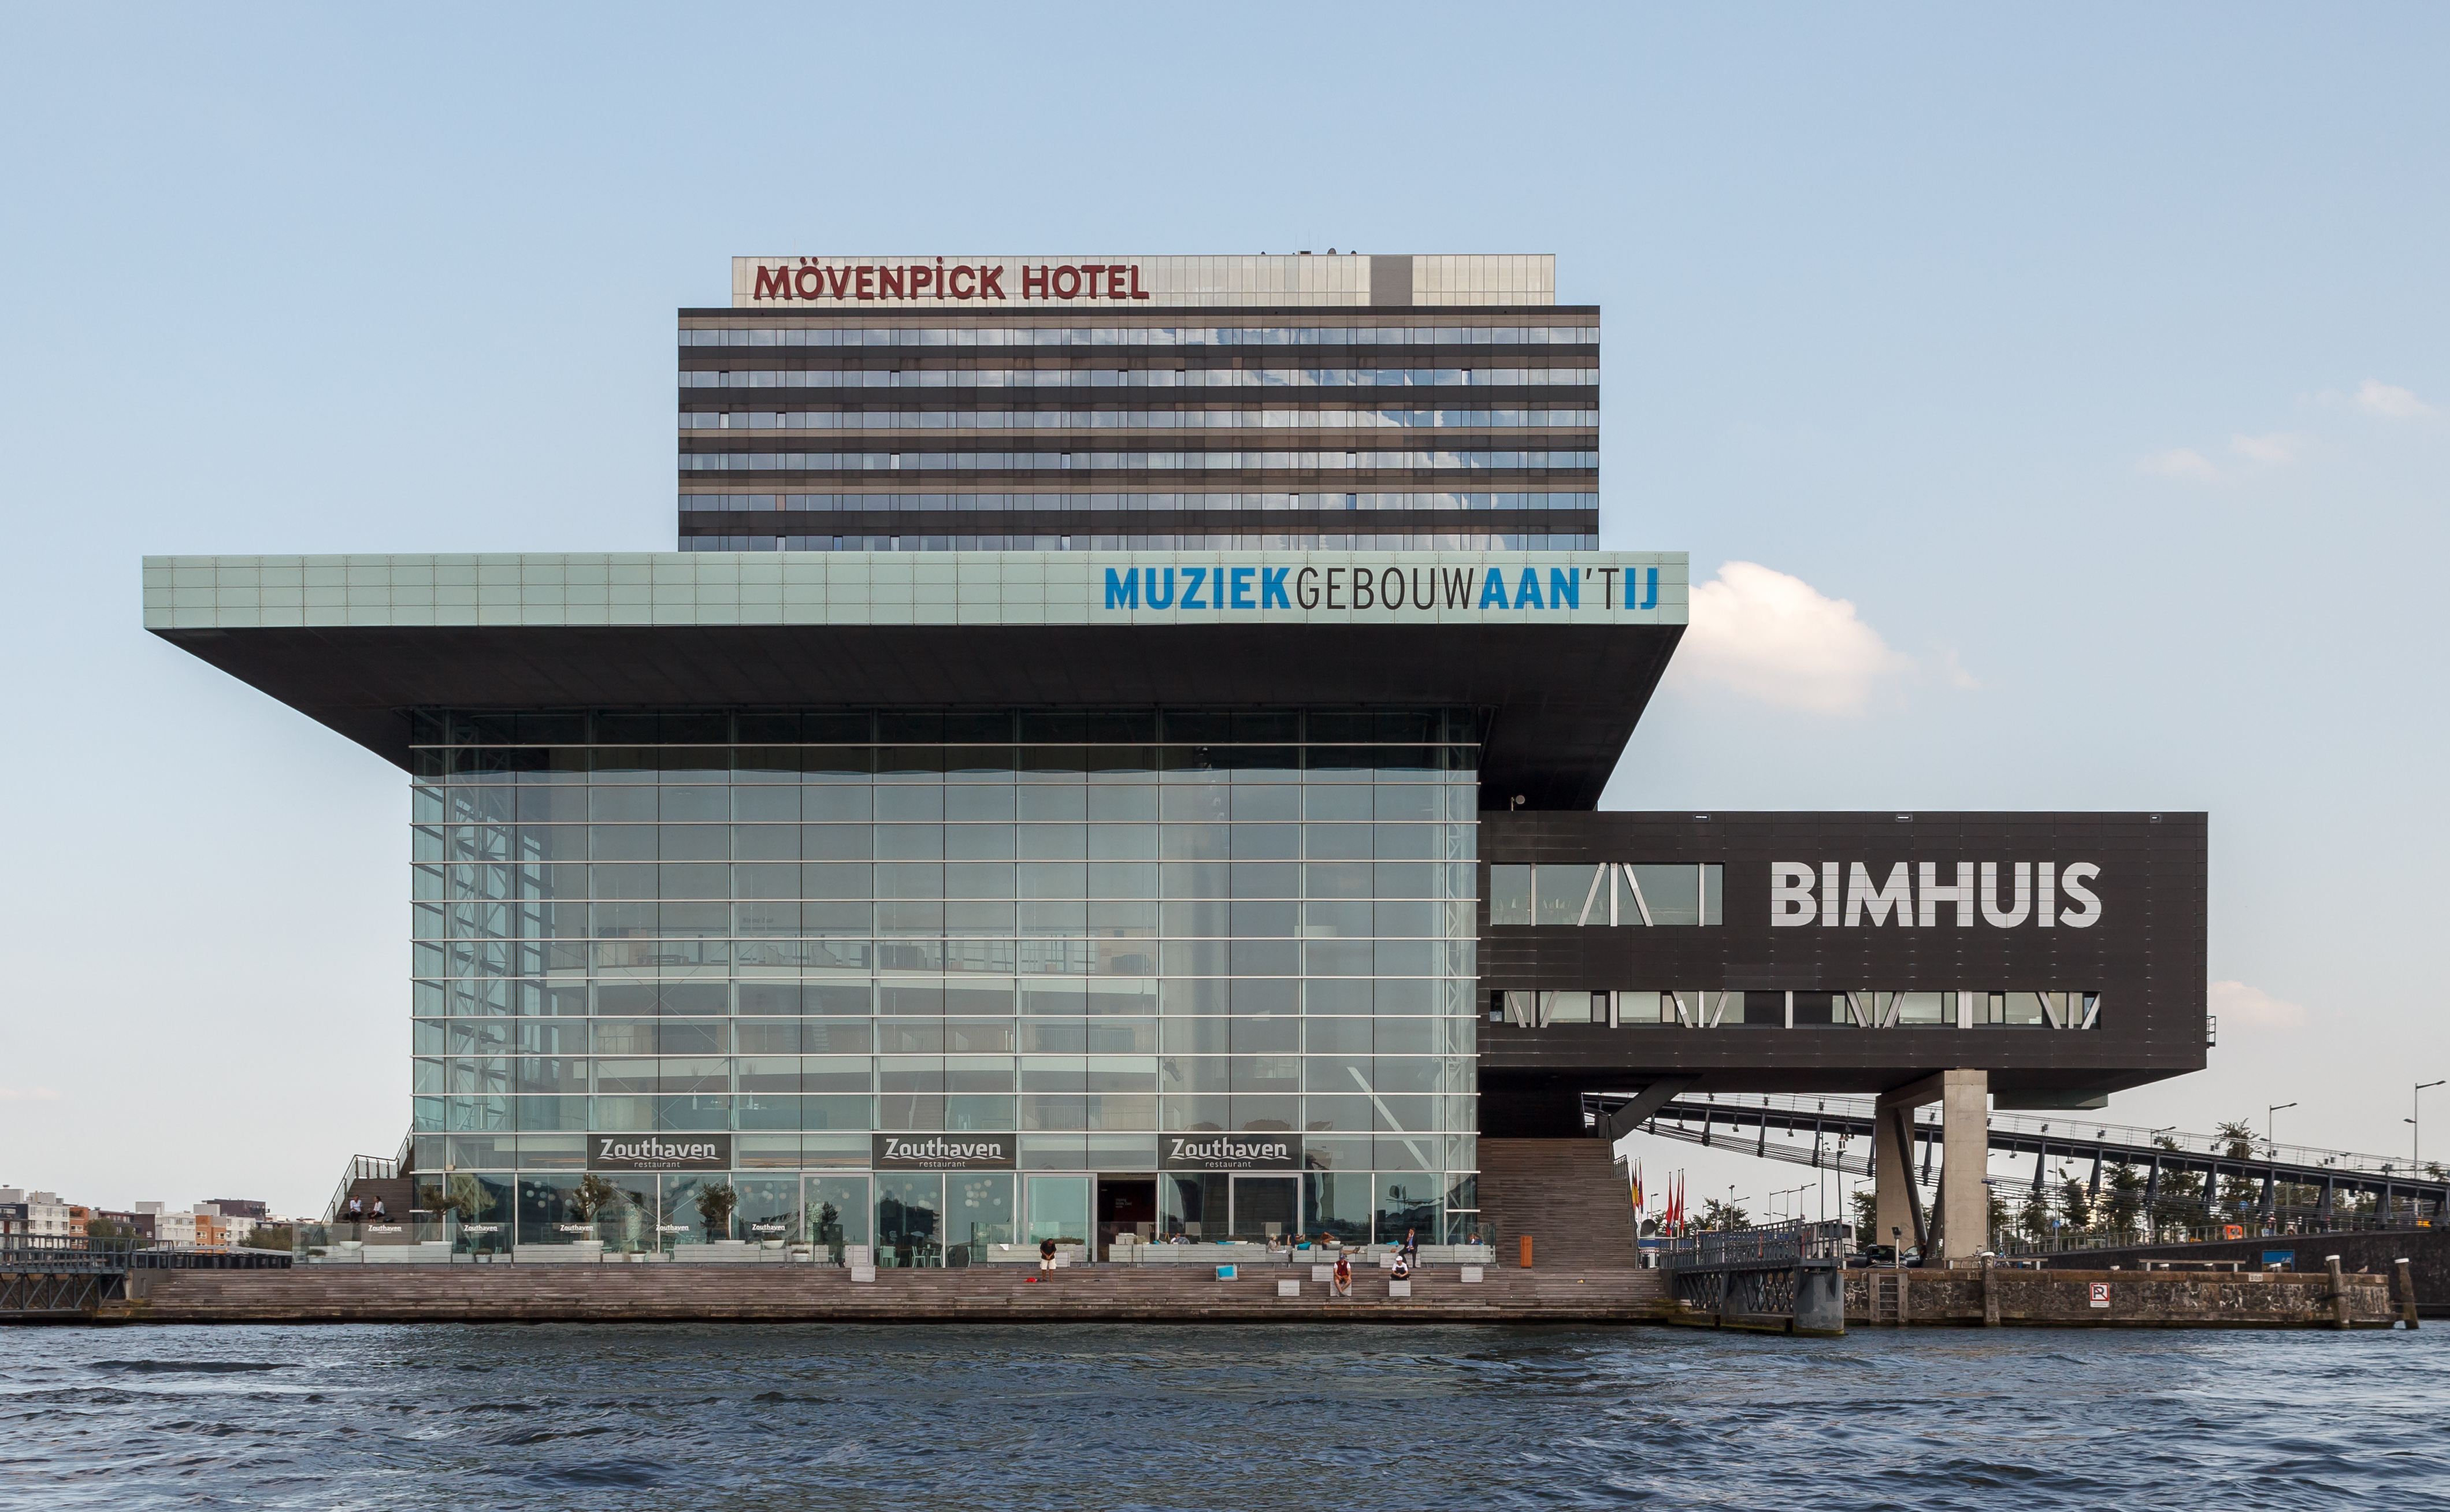 Muziekgebouw aan 't IJ and Mövenpick Hotel Amsterdam from tour boat 2016-09-12-6556